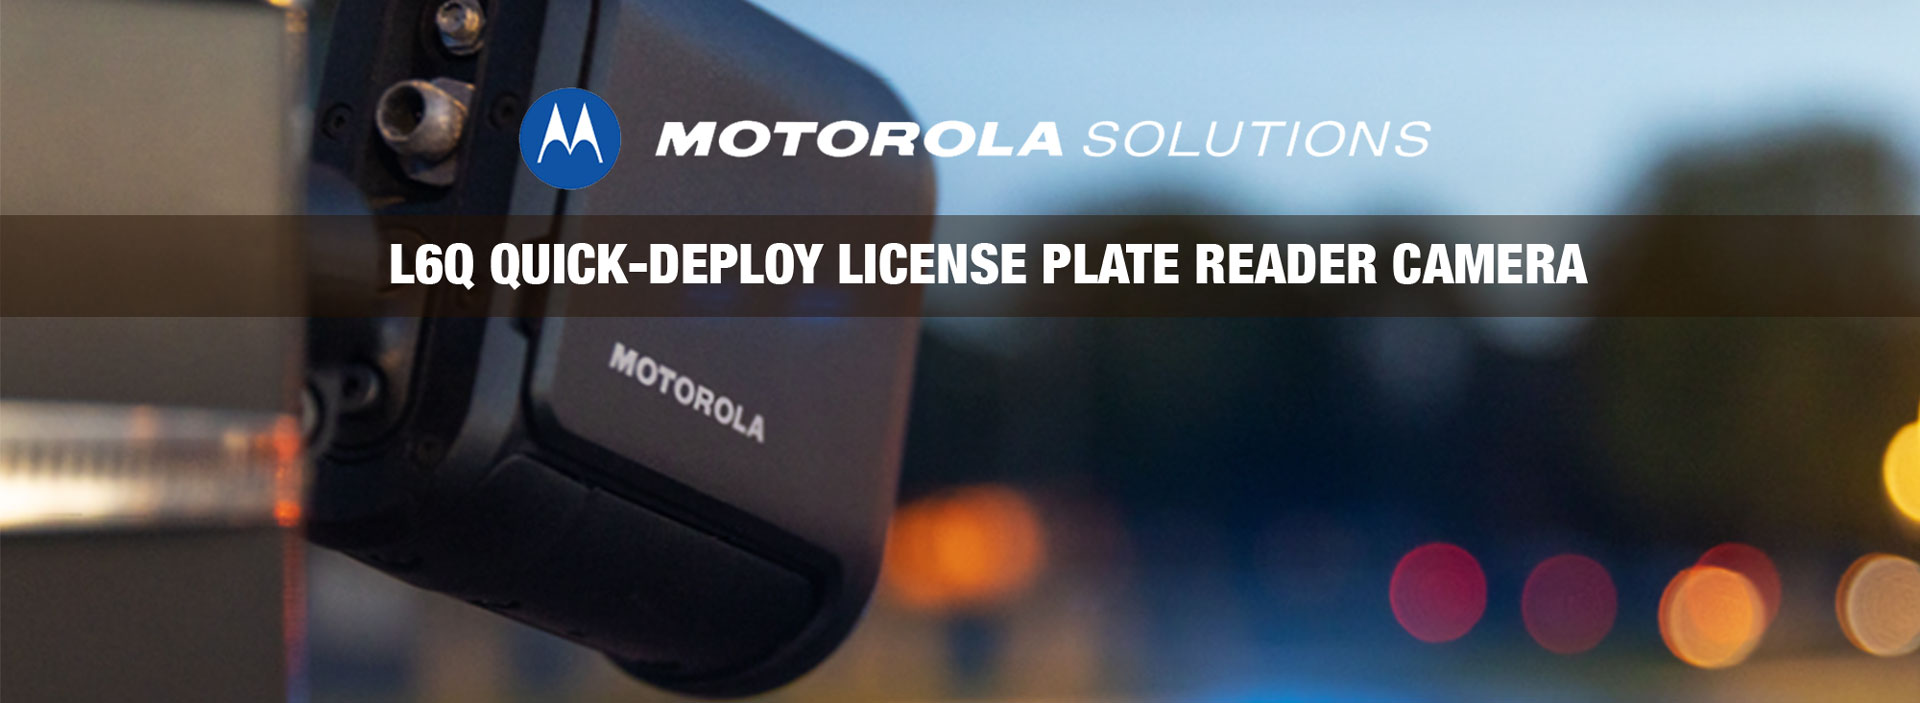 Motorola Solutions L6Q